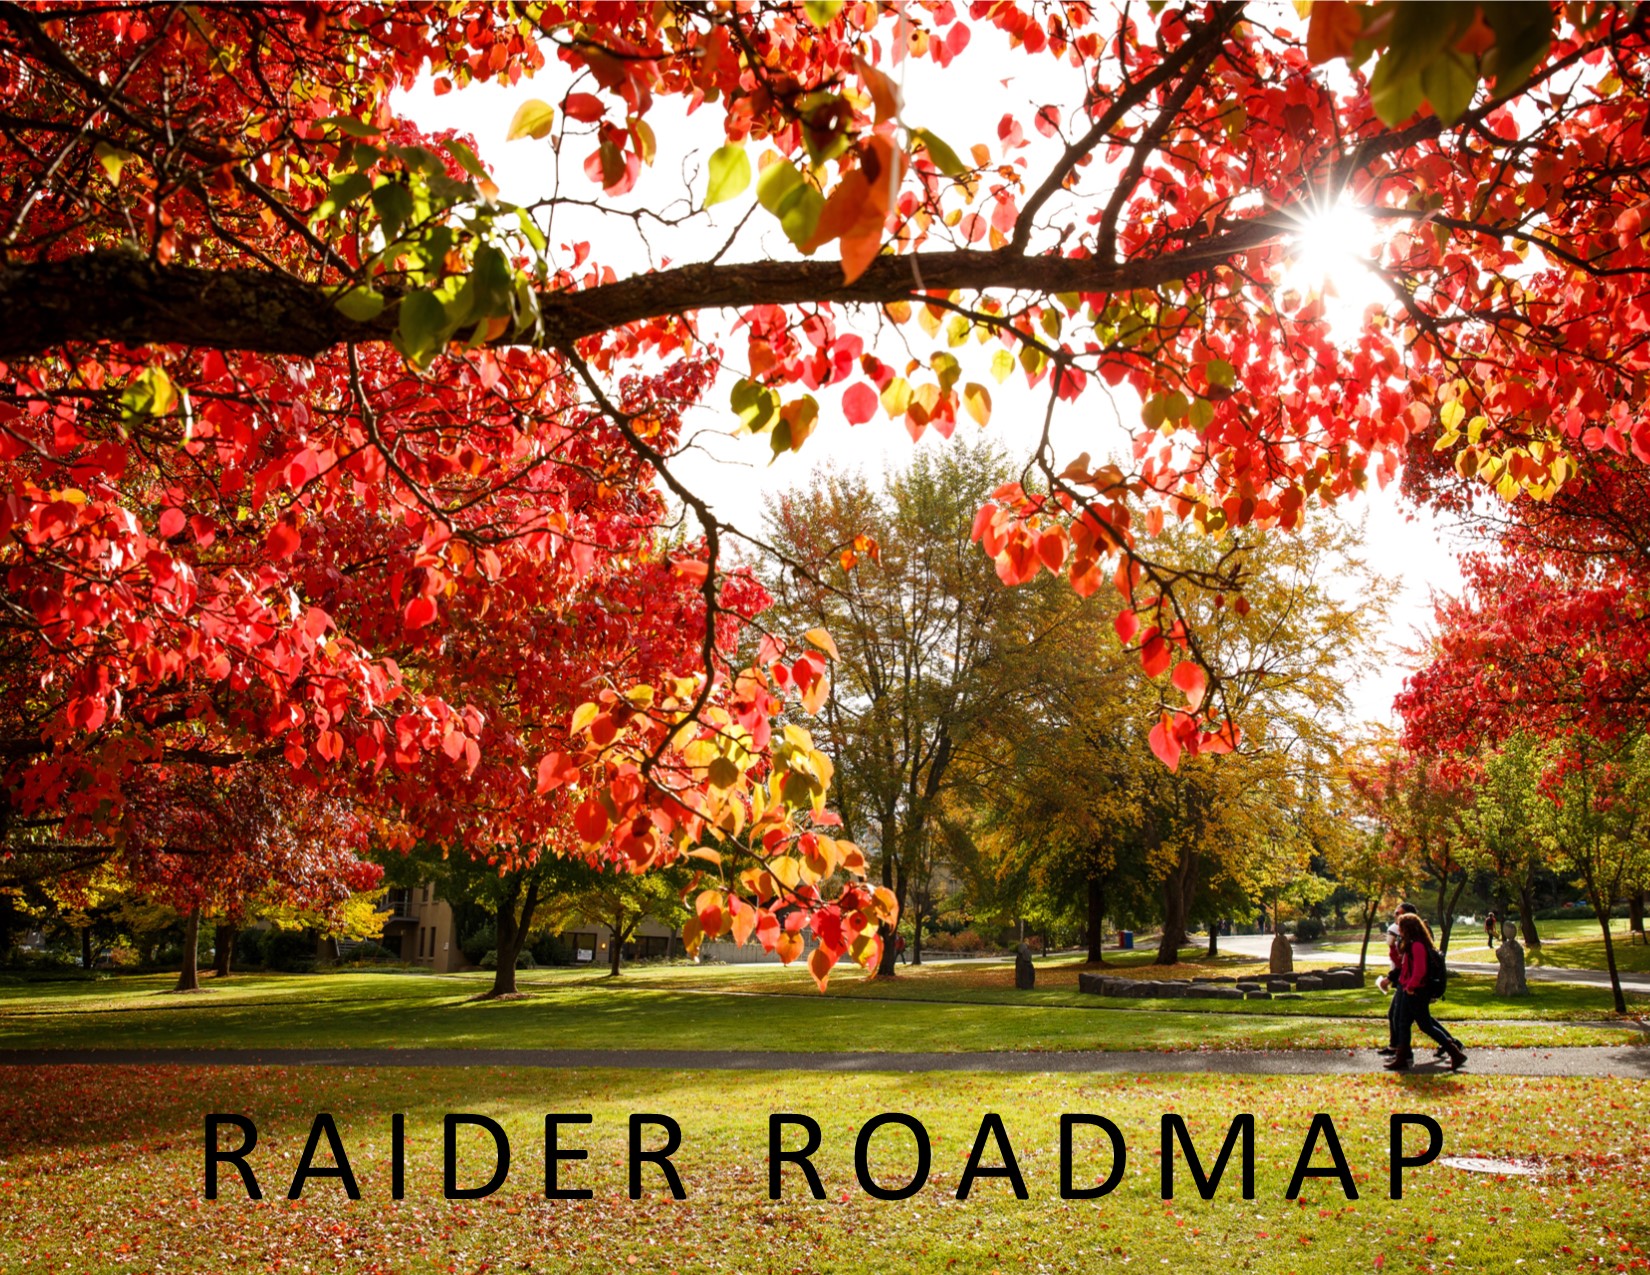 Raider Roadmap